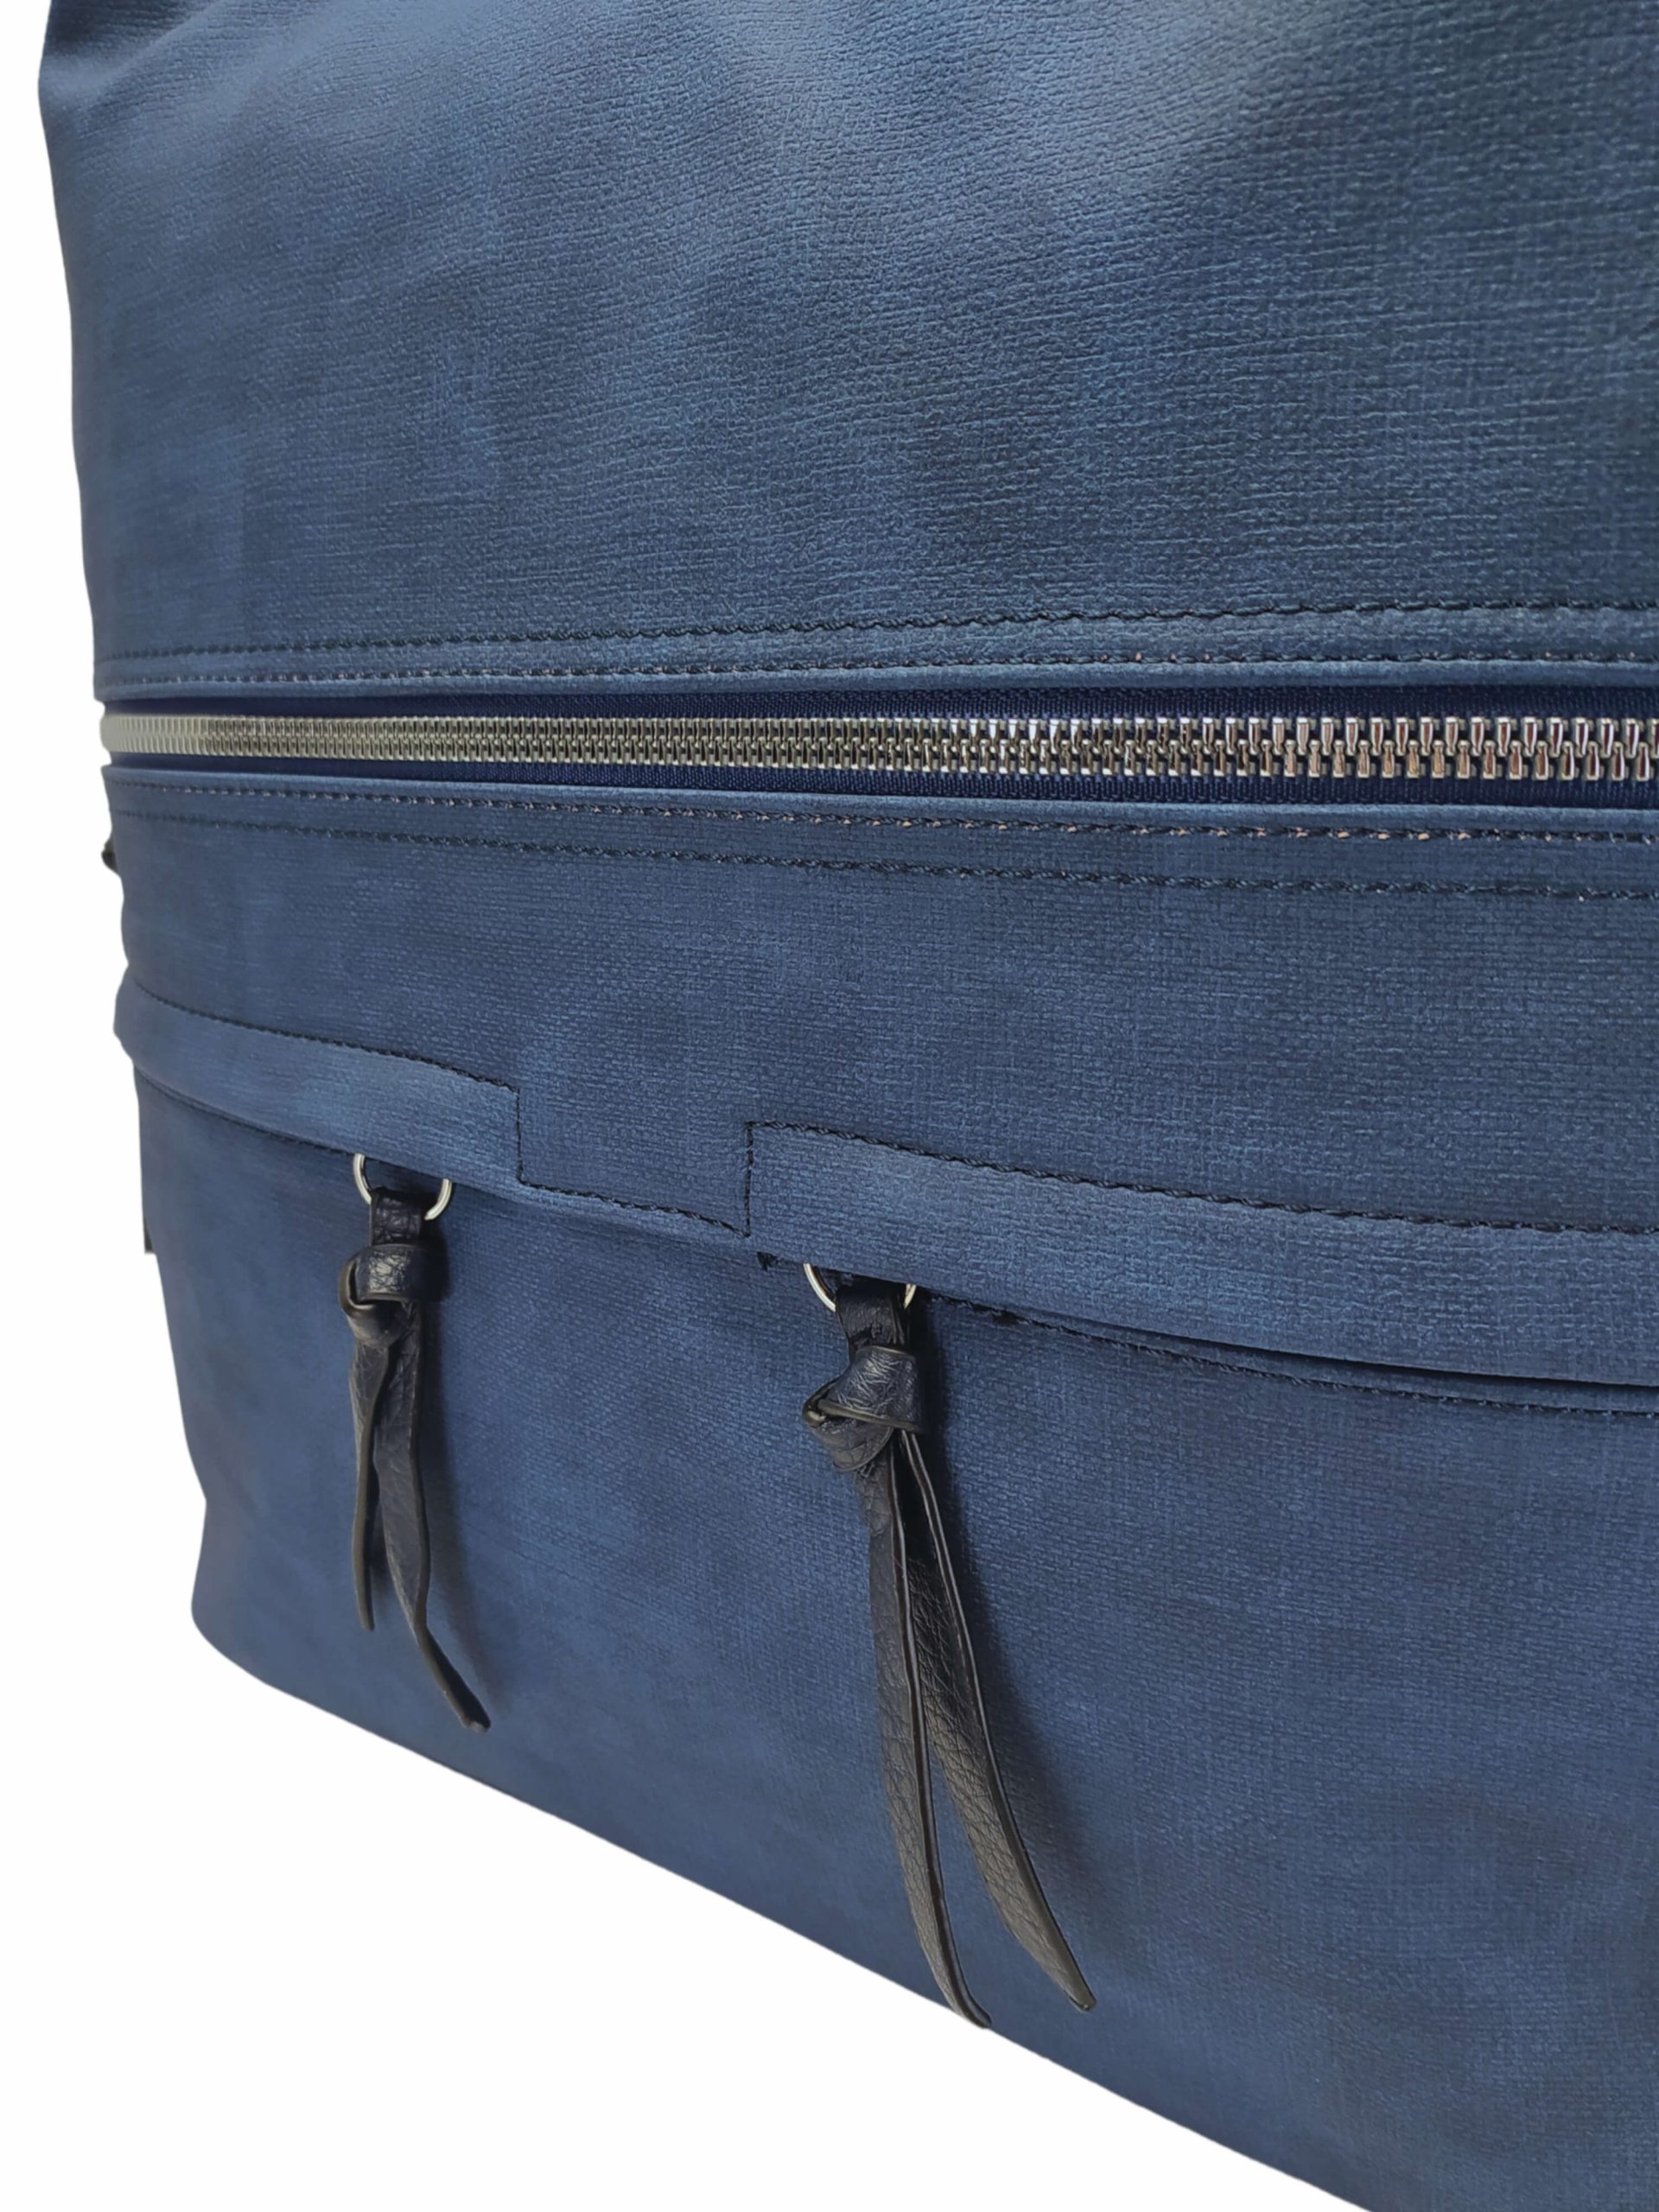 Velká středně modrá kabelka a batoh 2v1 s kapsami, Tapple, H181175N, detail přední strany kabelky a batohu 2v1